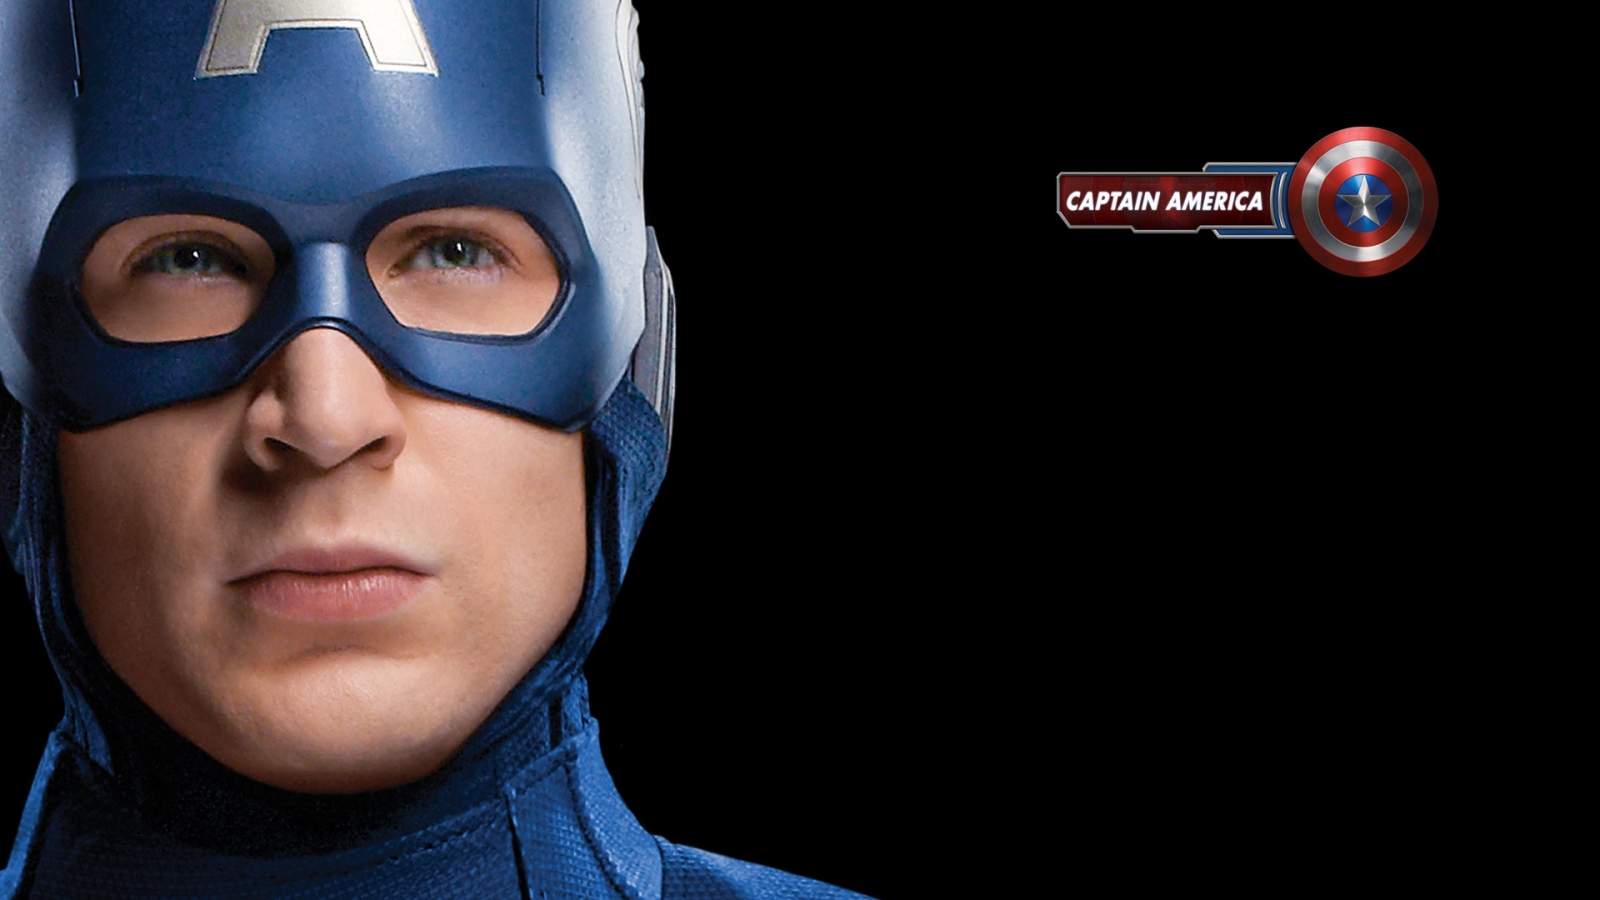 The Avengers Captain America for 1600 x 900 HDTV resolution